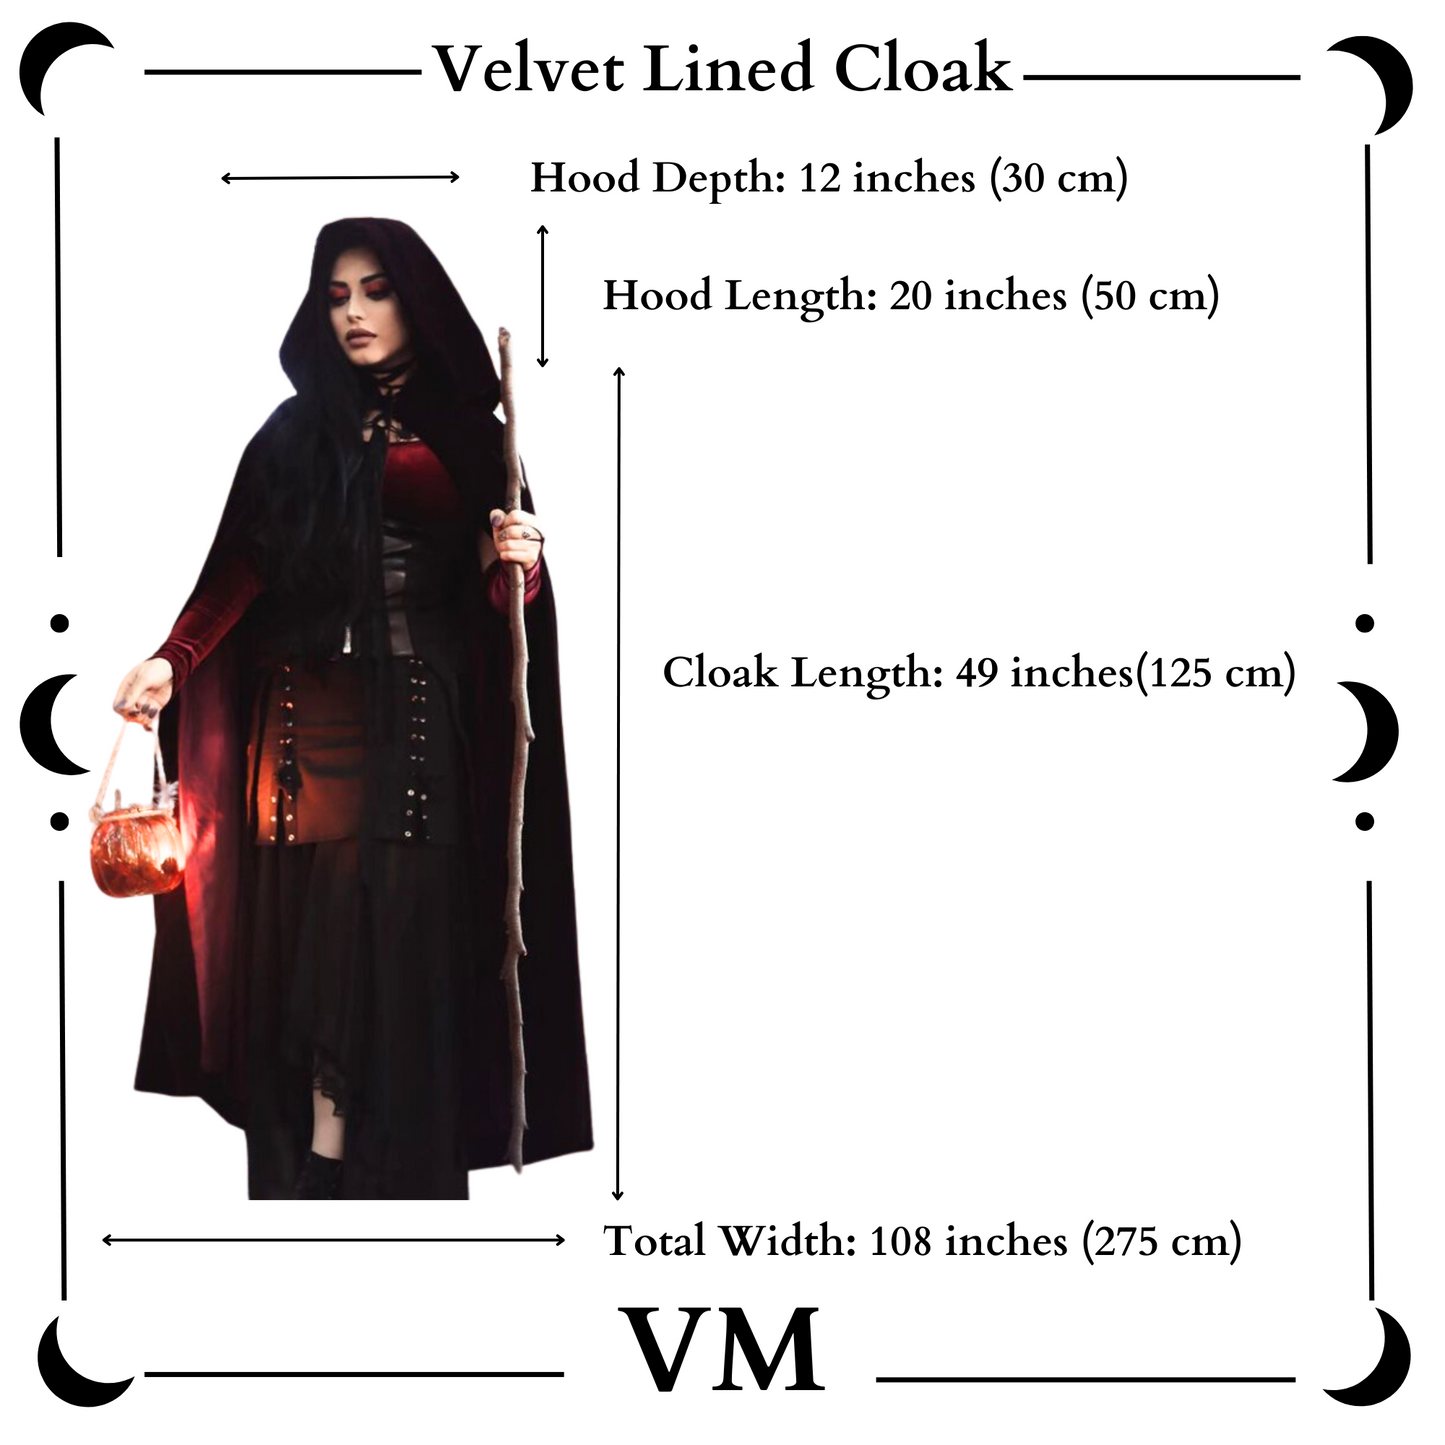 The VM Velvet Lined Cloak